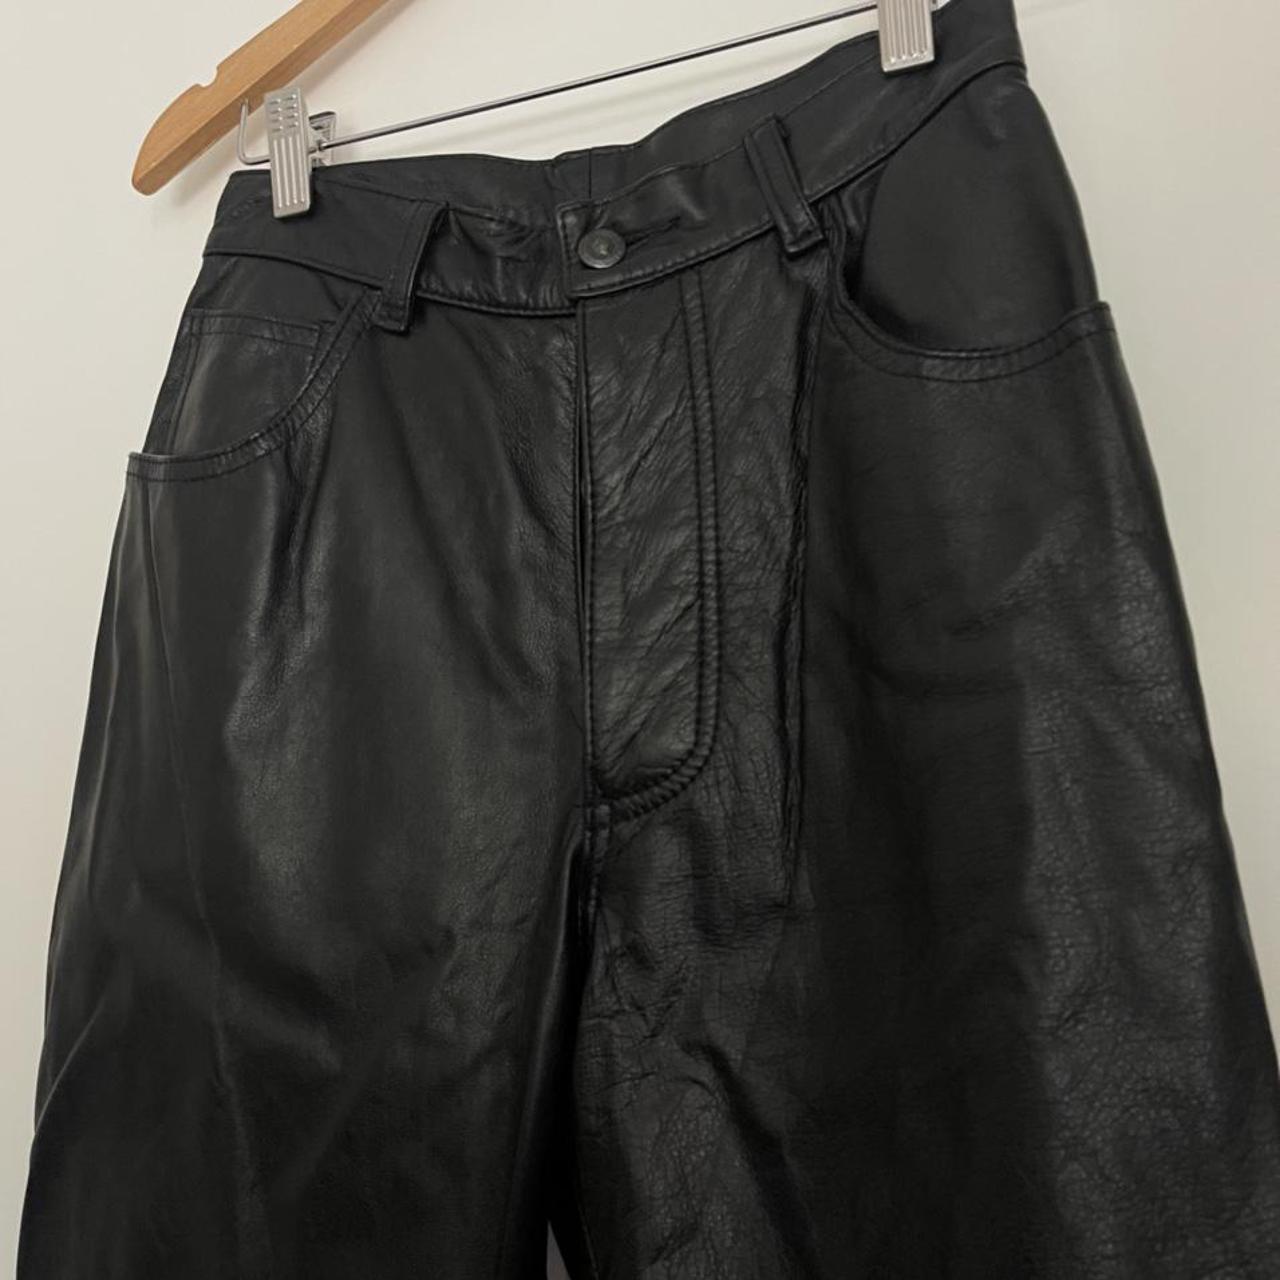 Authentic Frantik leather pants Gorgeous 100%... - Depop